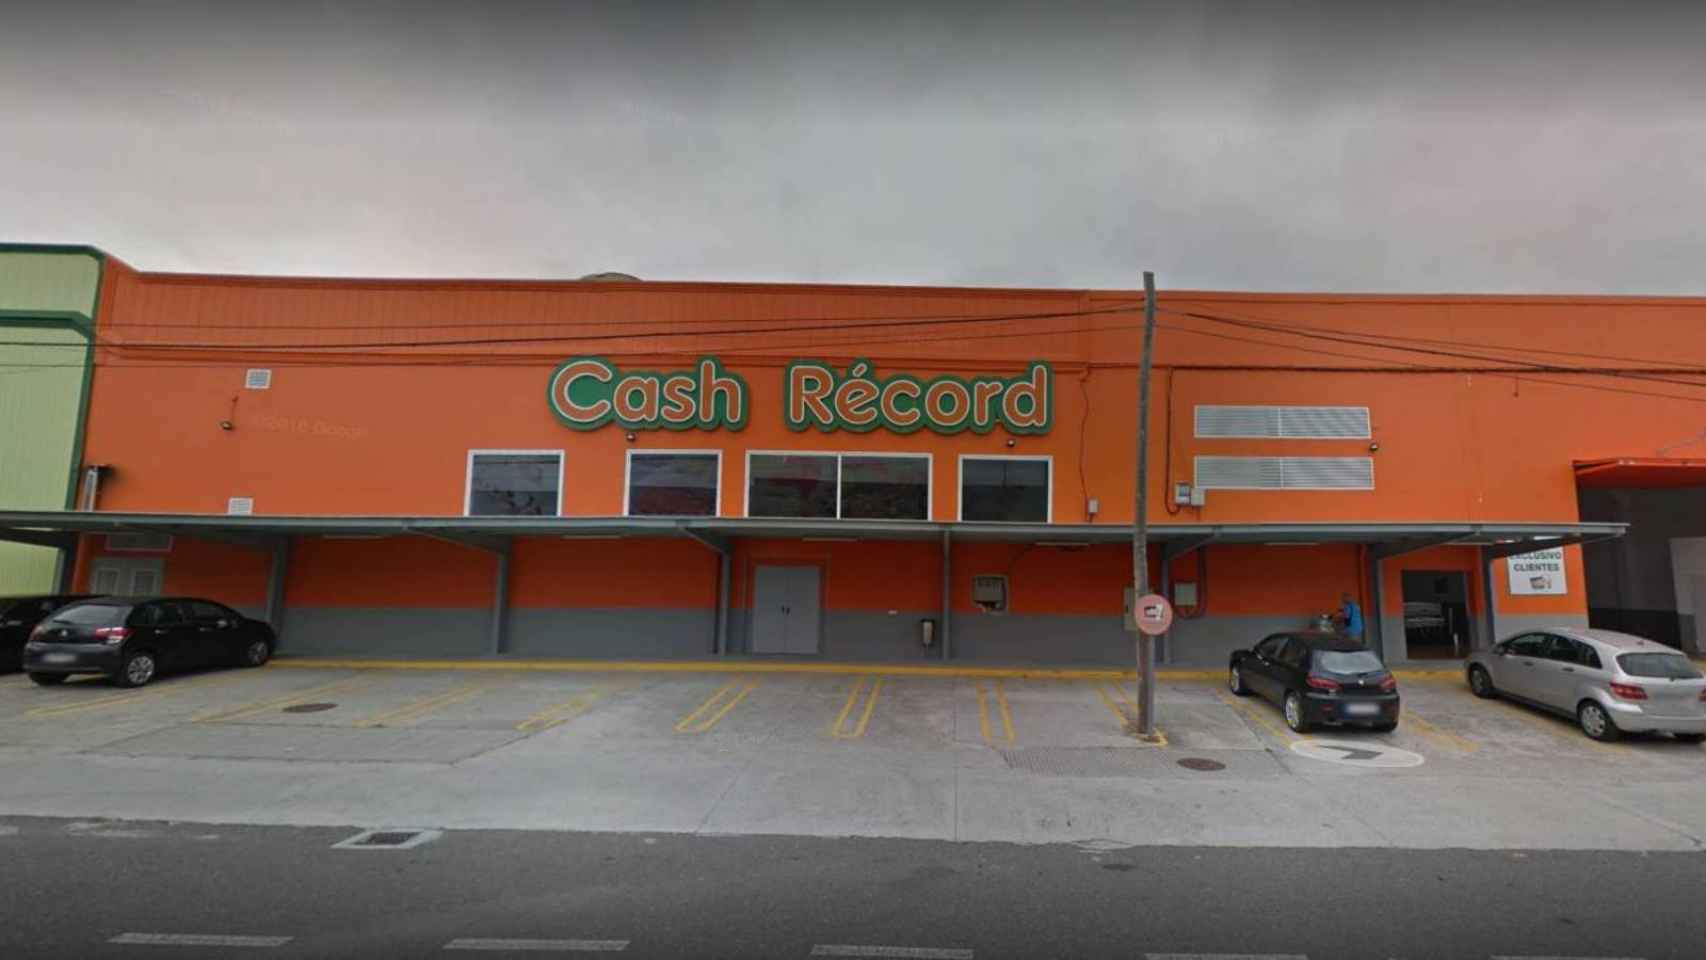 Exterior del Cash Record a las afueras de Lugo, donde tuvo lugar el crimen.